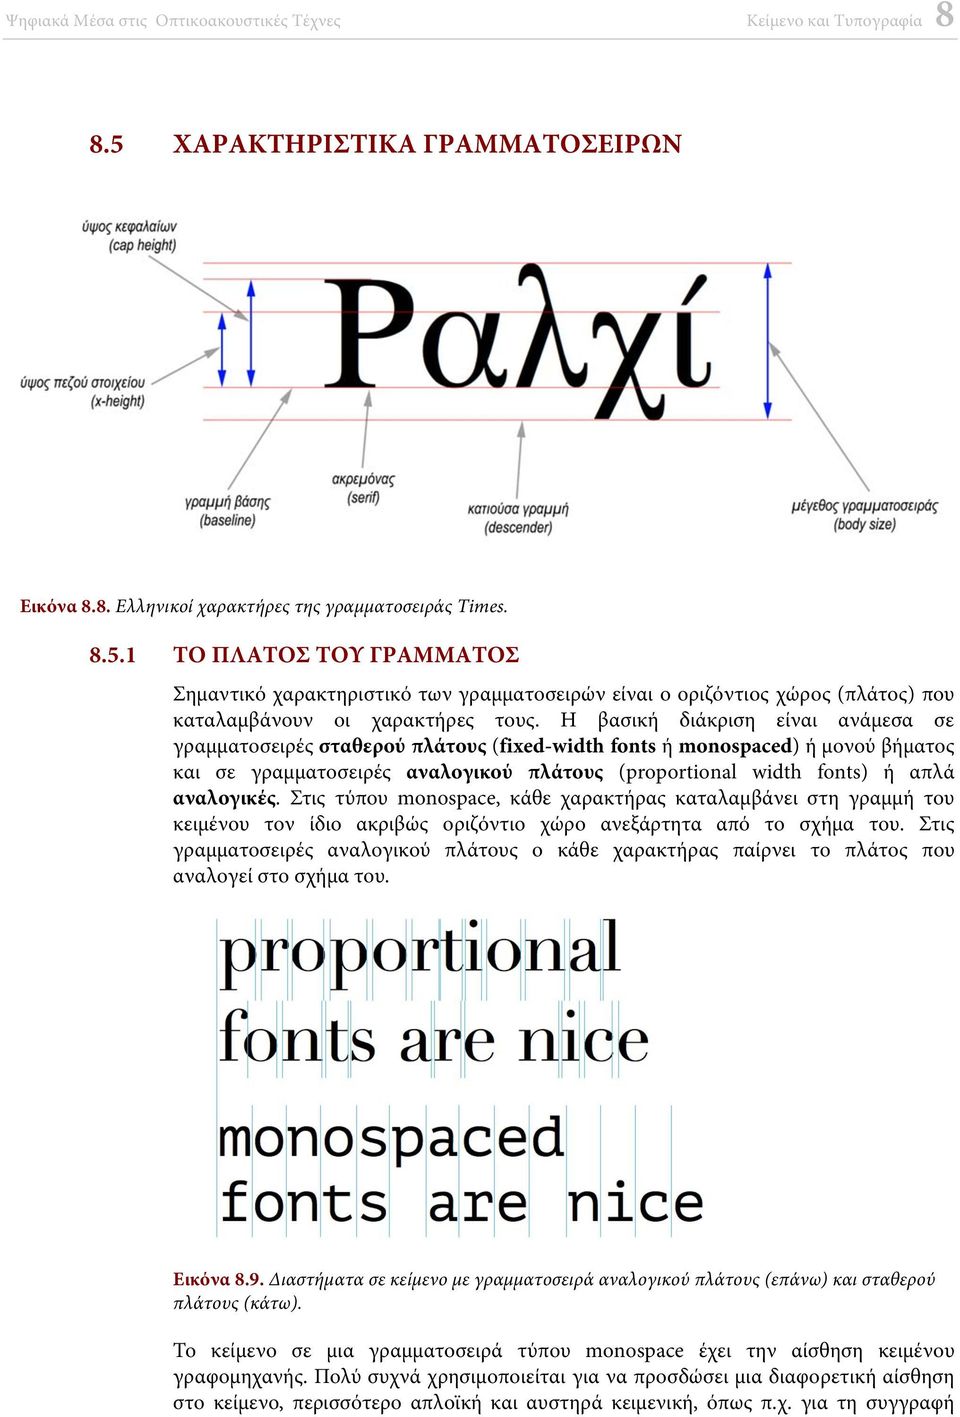 αναλογικές. Στις τύπου monospace, κάθε χαρακτήρας καταλαμβάνει στη γραμμή του κειμένου τον ίδιο ακριβώς οριζόντιο χώρο ανεξάρτητα από το σχήμα του.